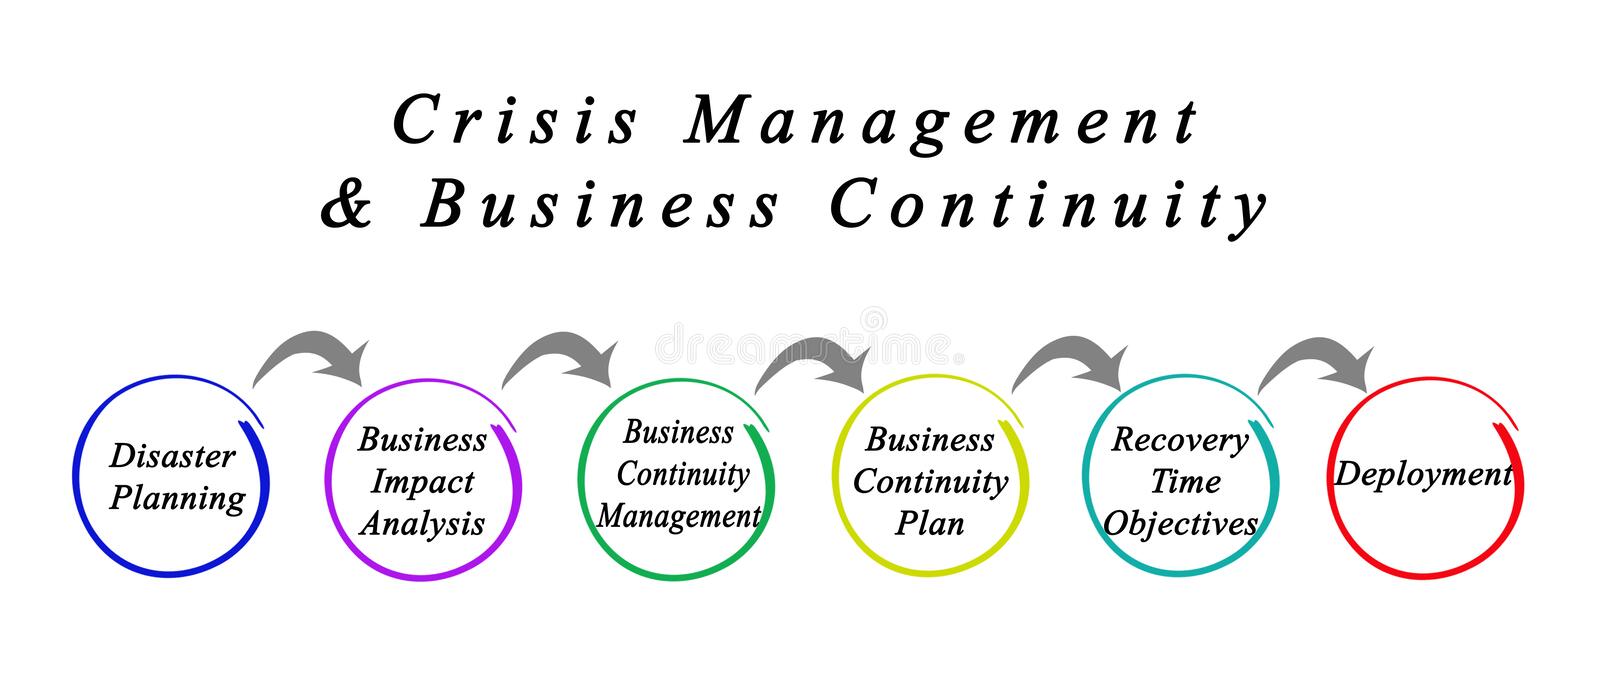 crisis-management-business